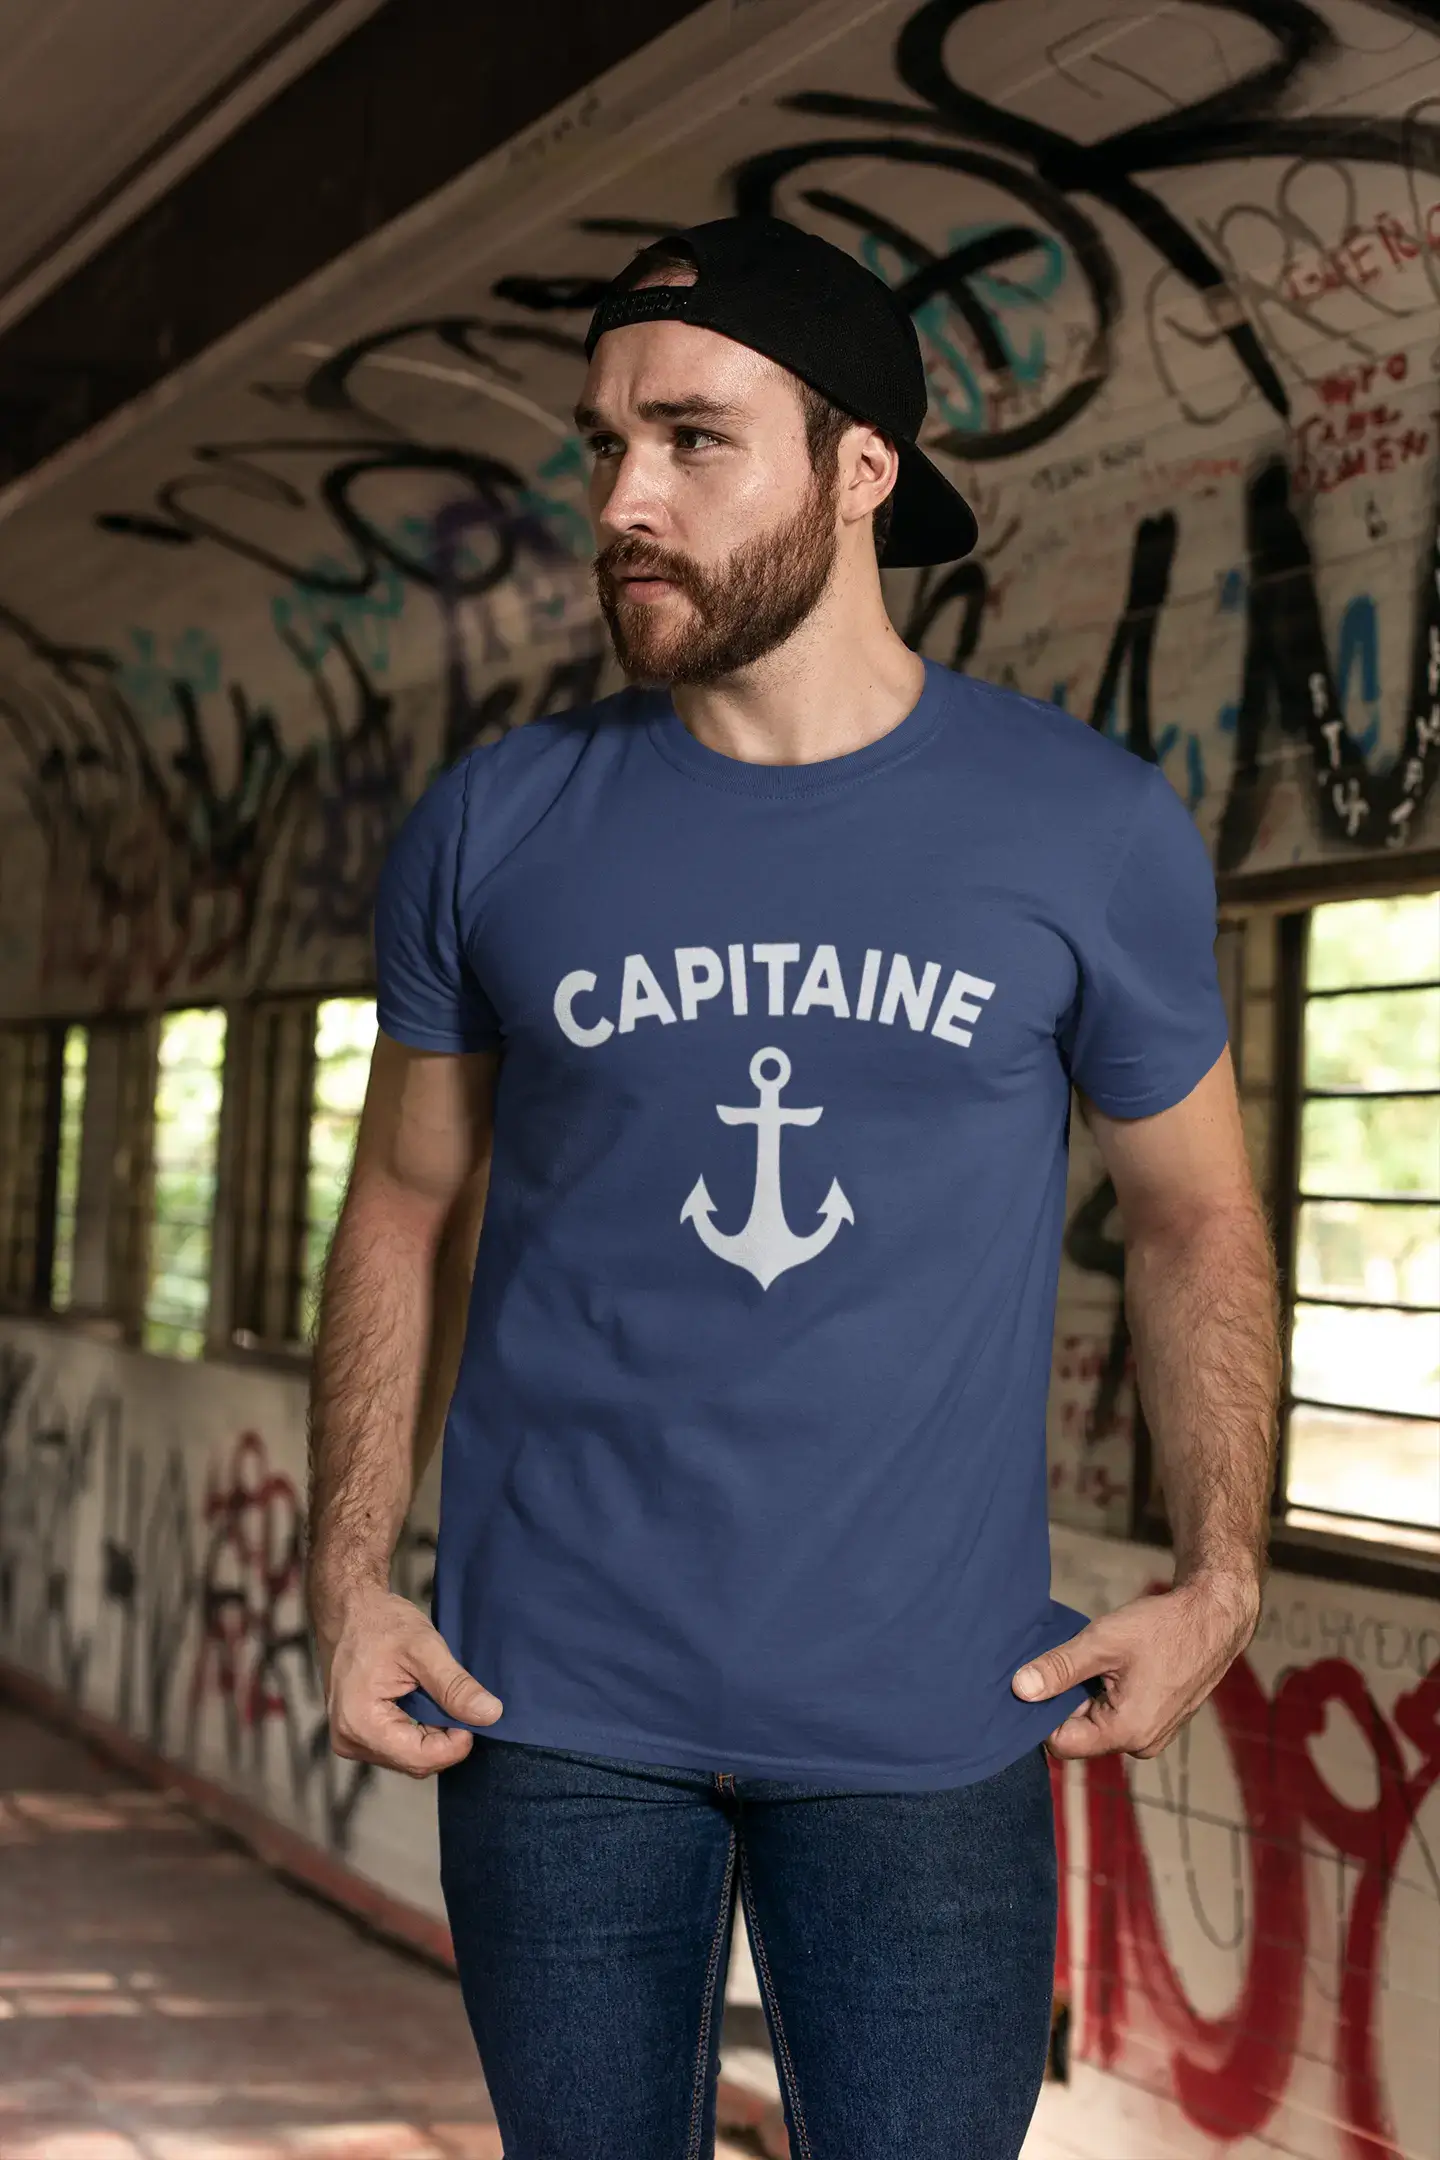 Homme T-Shirt Graphique Imprimé Vintage Tee Capitaine Denim